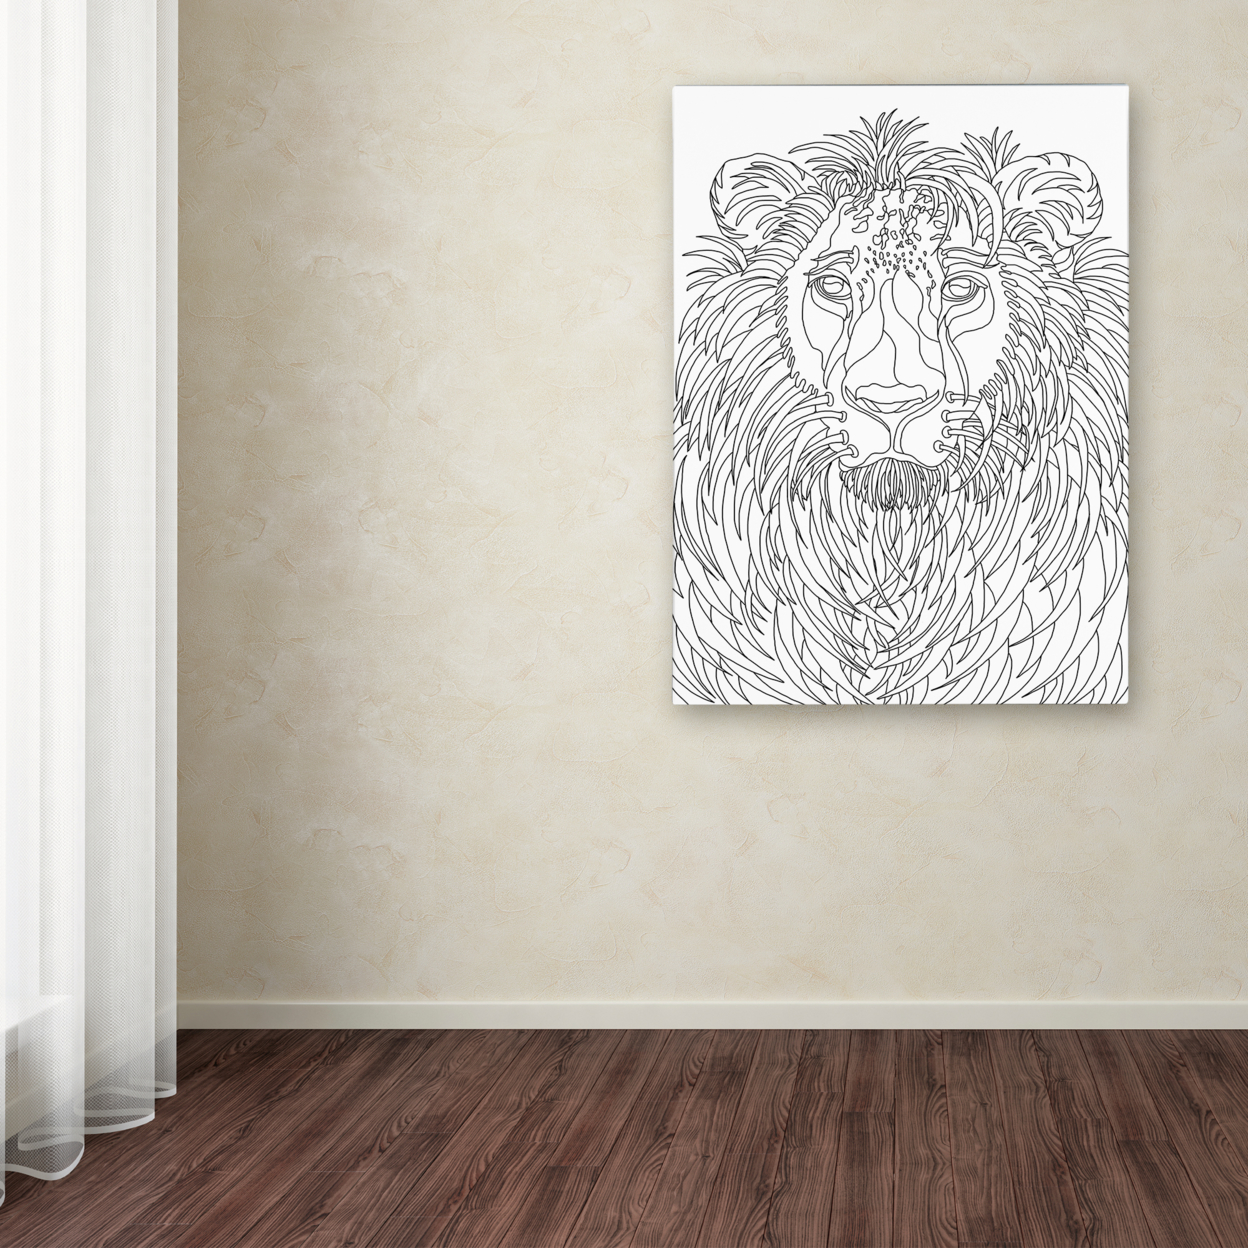 Kathy G. Ahrens 'Lion' Canvas Art 18 X 24